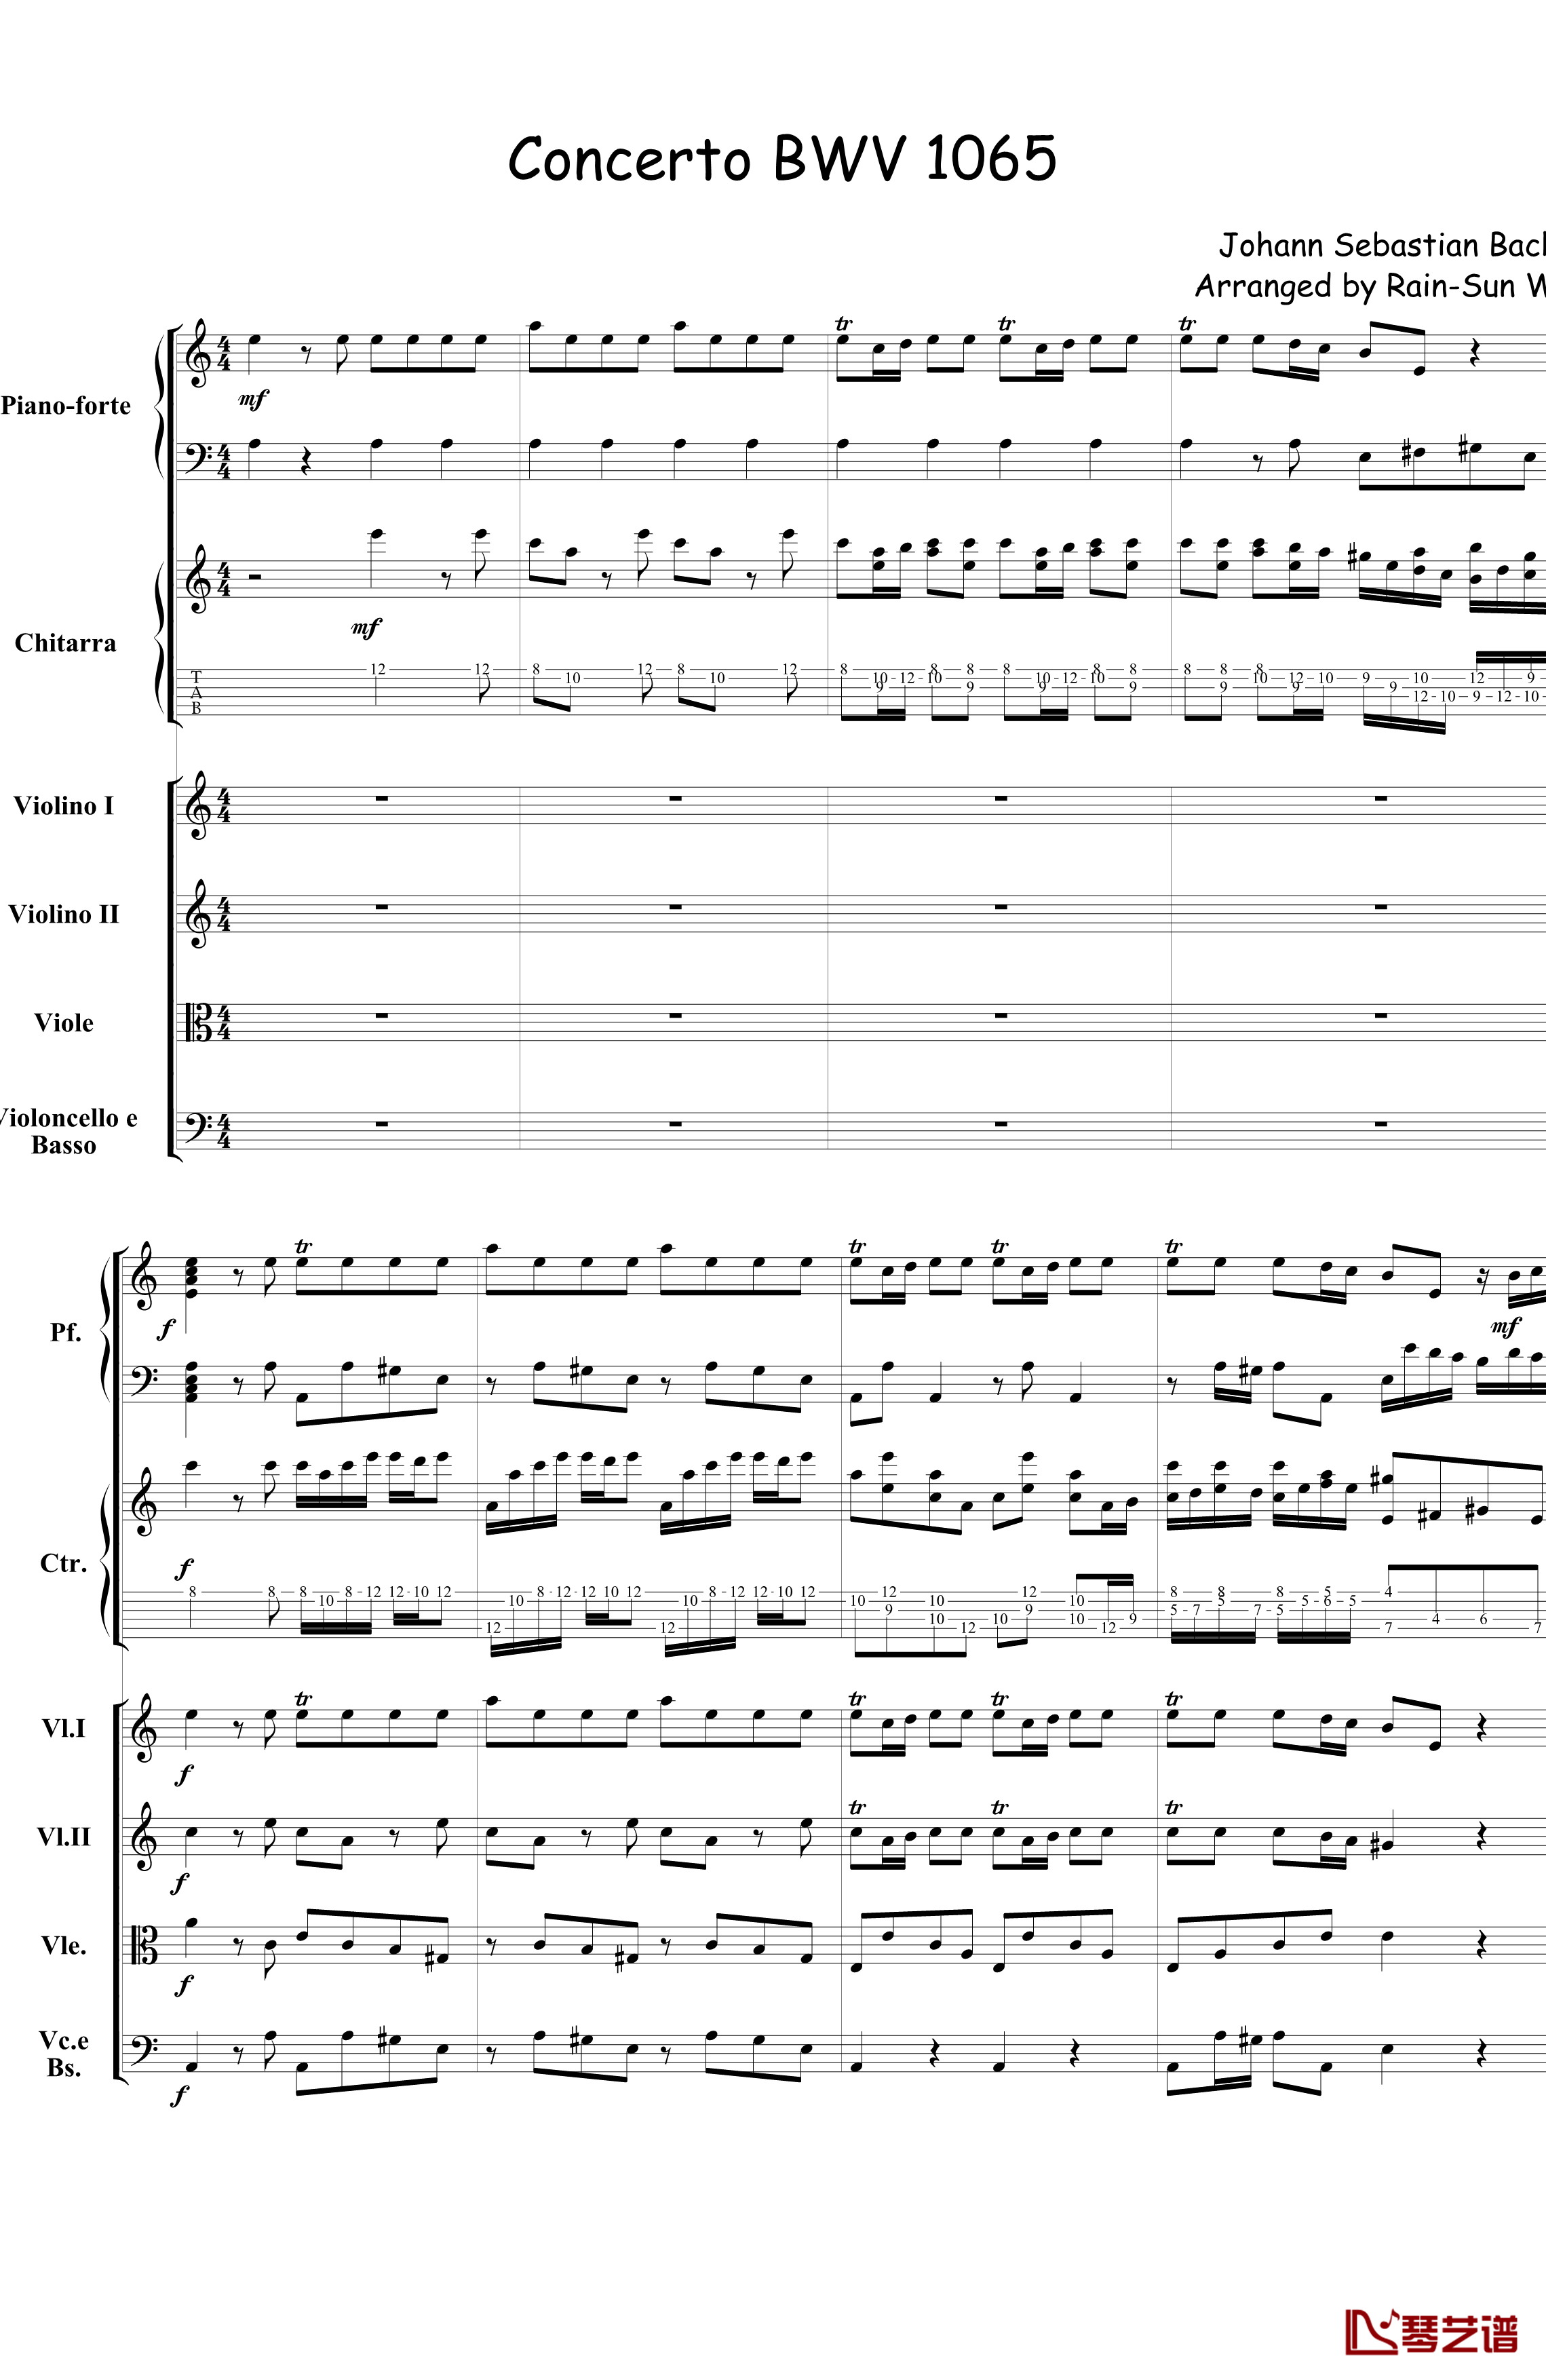 巴赫为四架钢琴写的钢琴协奏曲钢琴谱-钢琴吉他弦乐组-巴哈-Bach, Johann Sebastian1